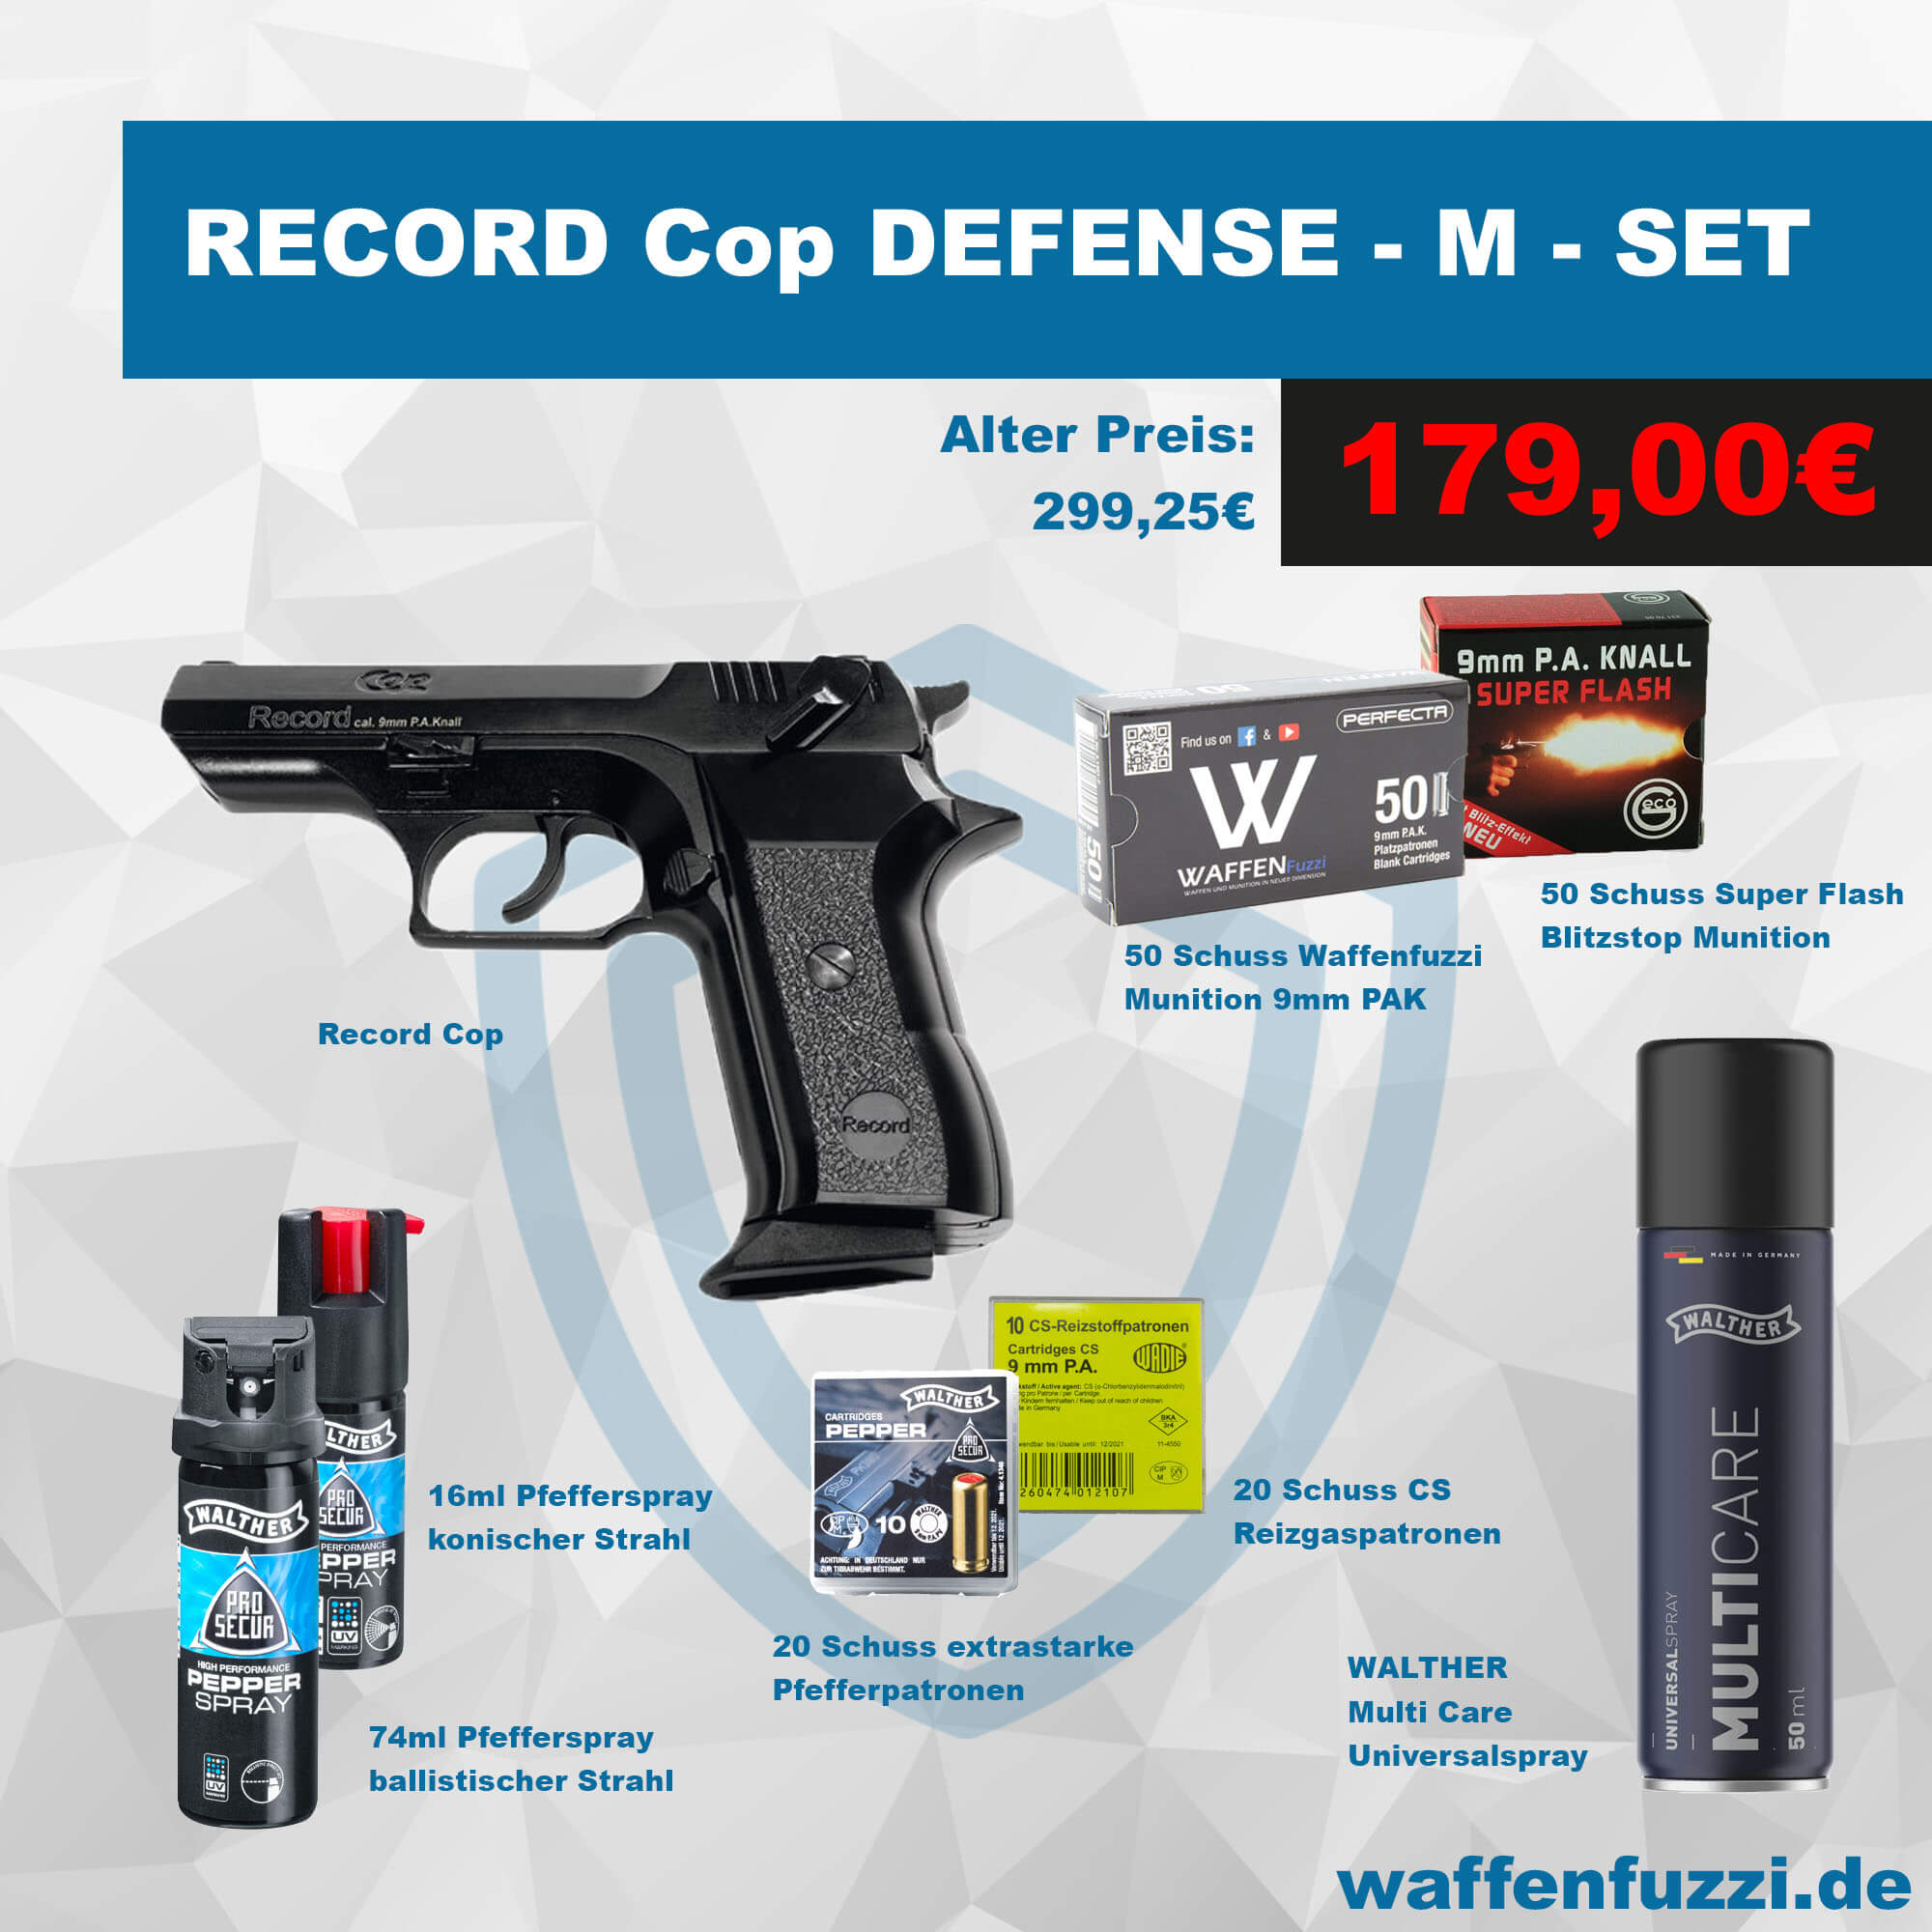 Record Cop Defense Set für unschlagbare 179 Euro